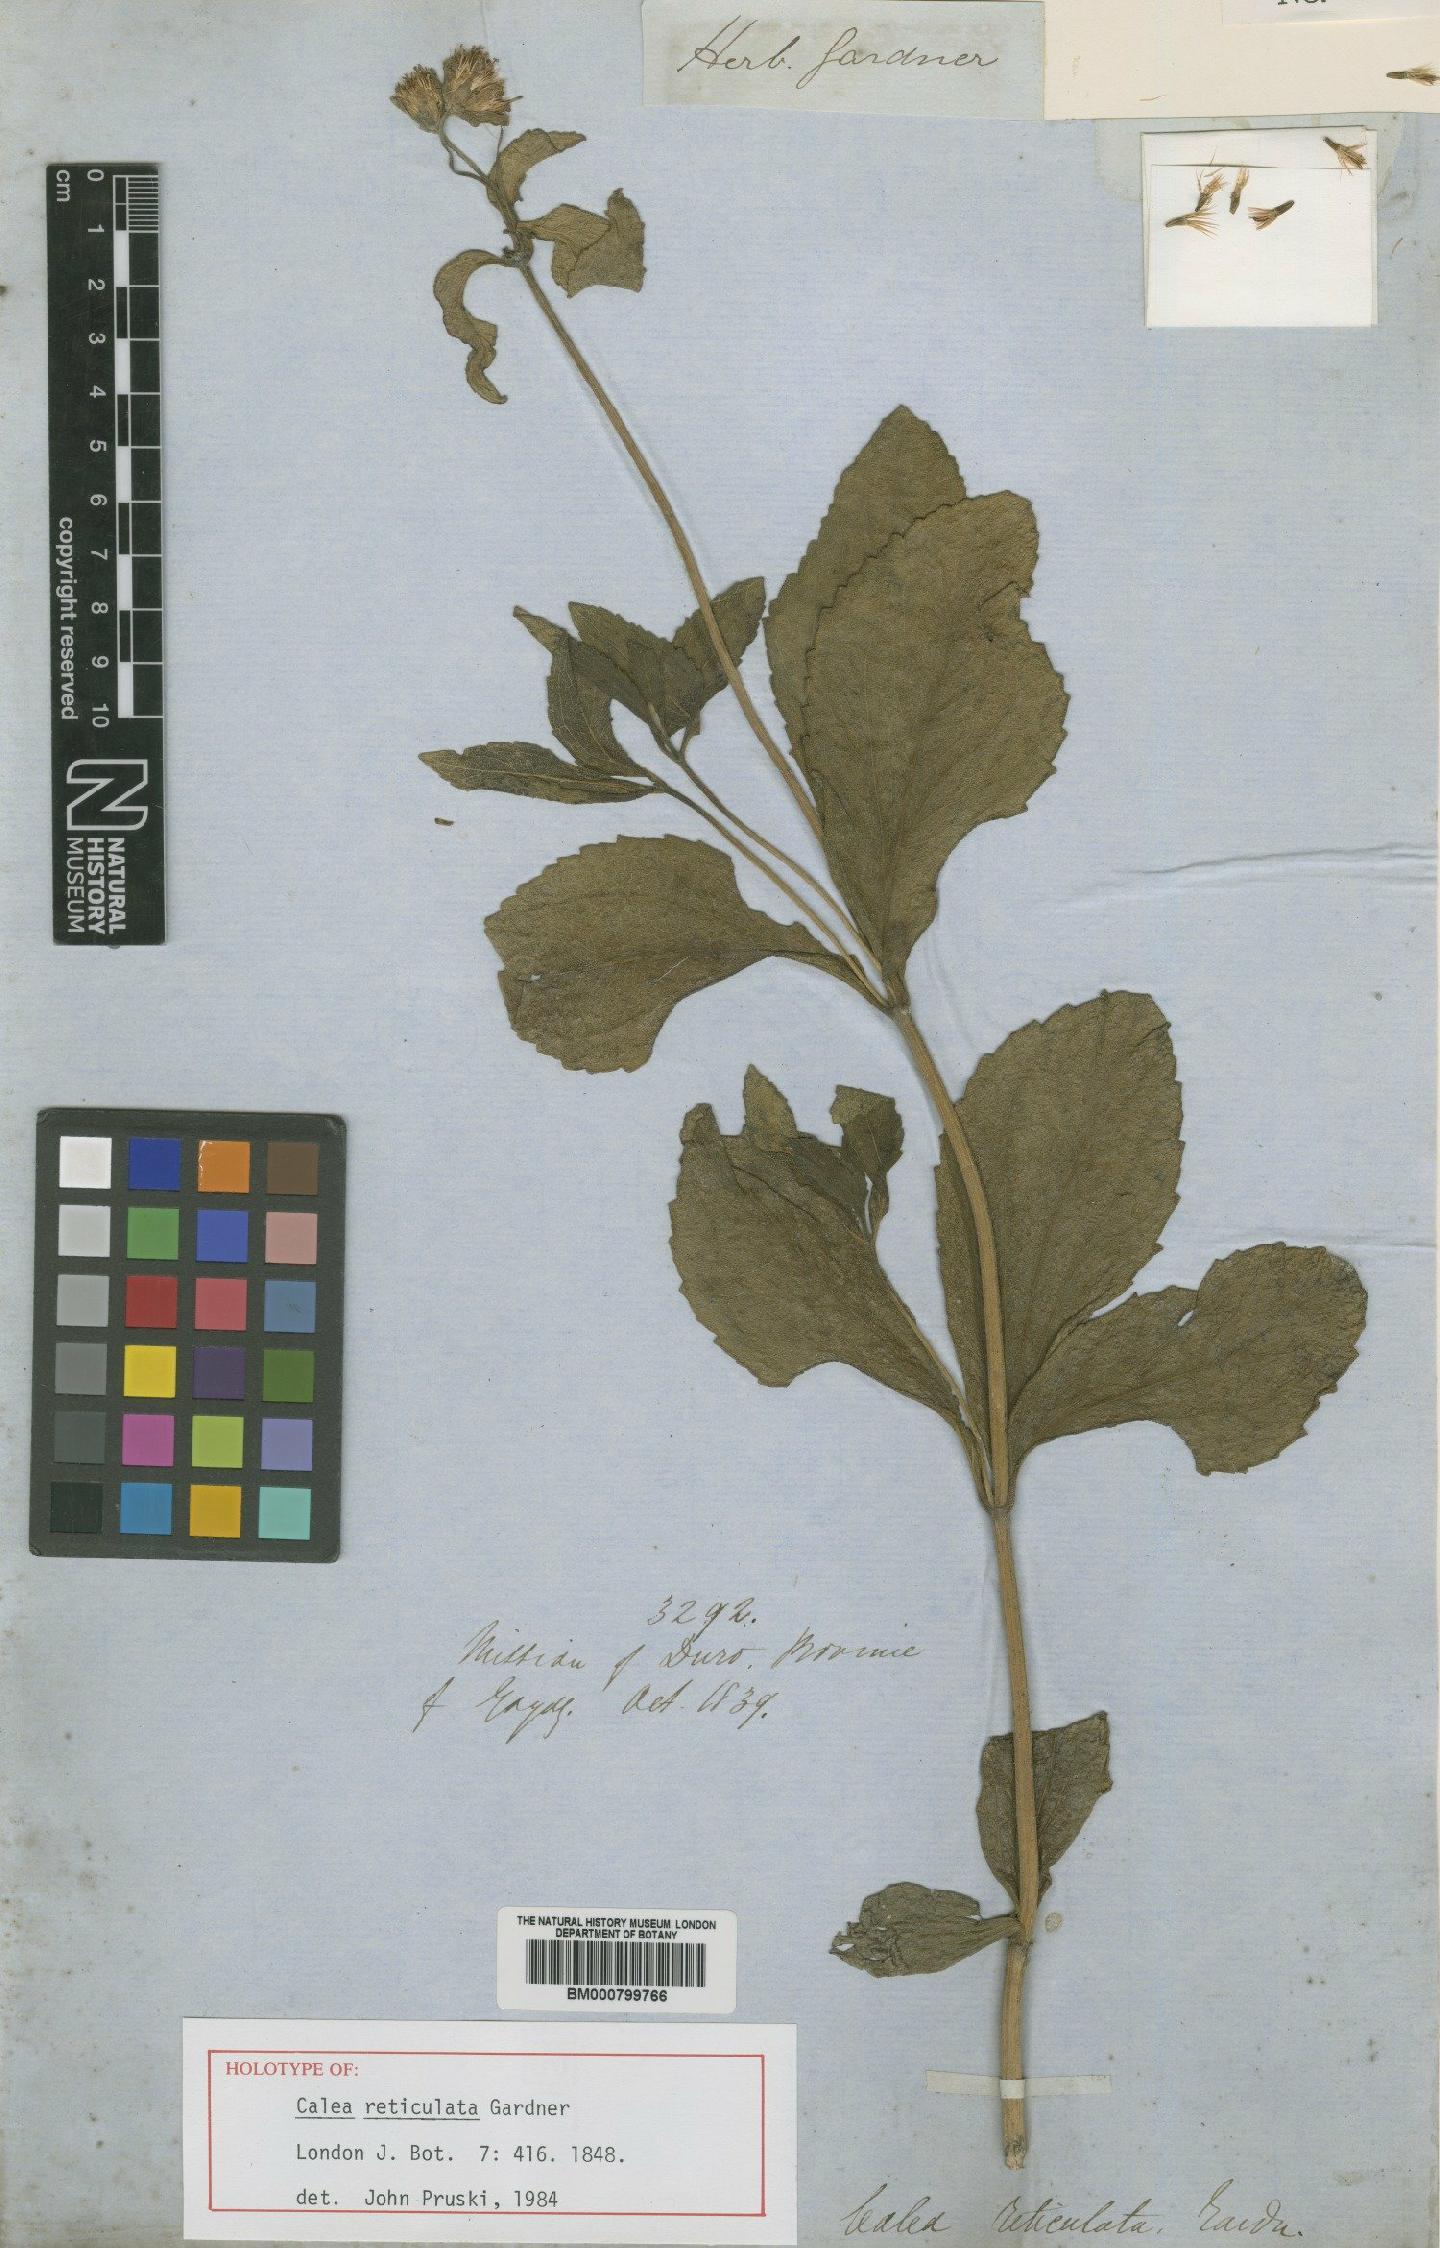 To NHMUK collection (Calea reticulata Gardner; Holotype; NHMUK:ecatalogue:4992113)